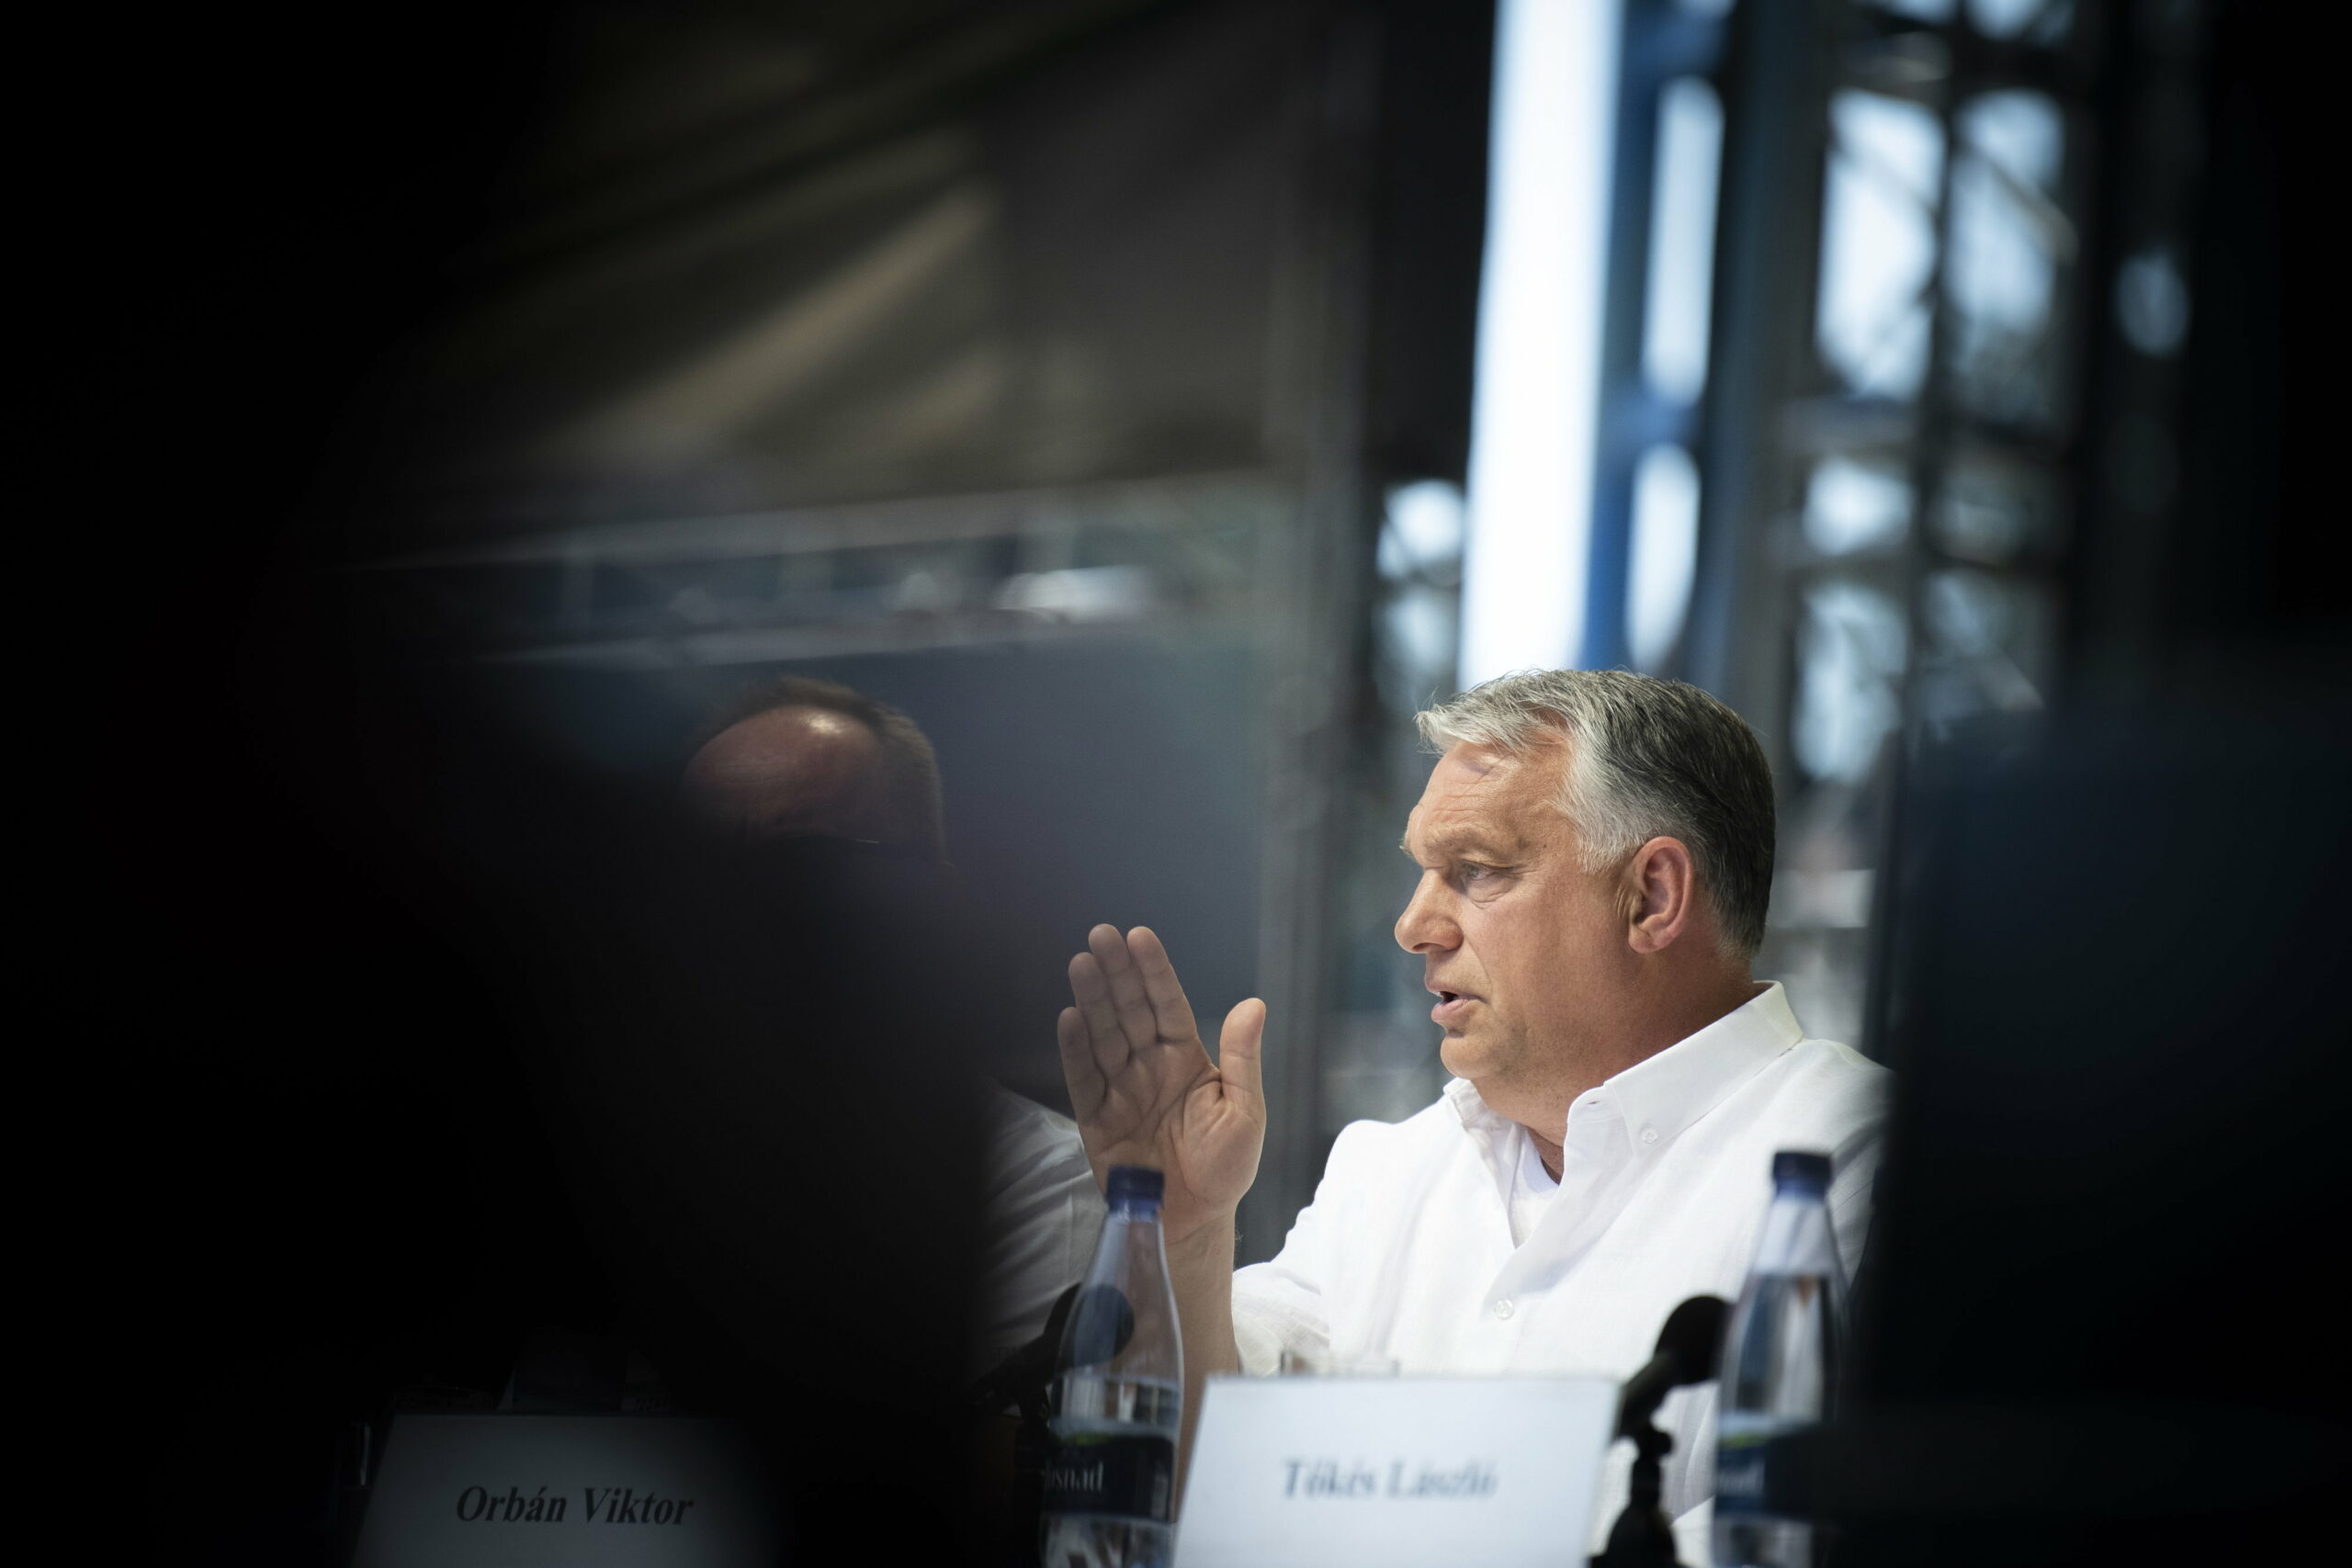 Orbán Viktor: a magamfajták esetében a rasszizmus ab ovo ki van zárva | szmo.hu